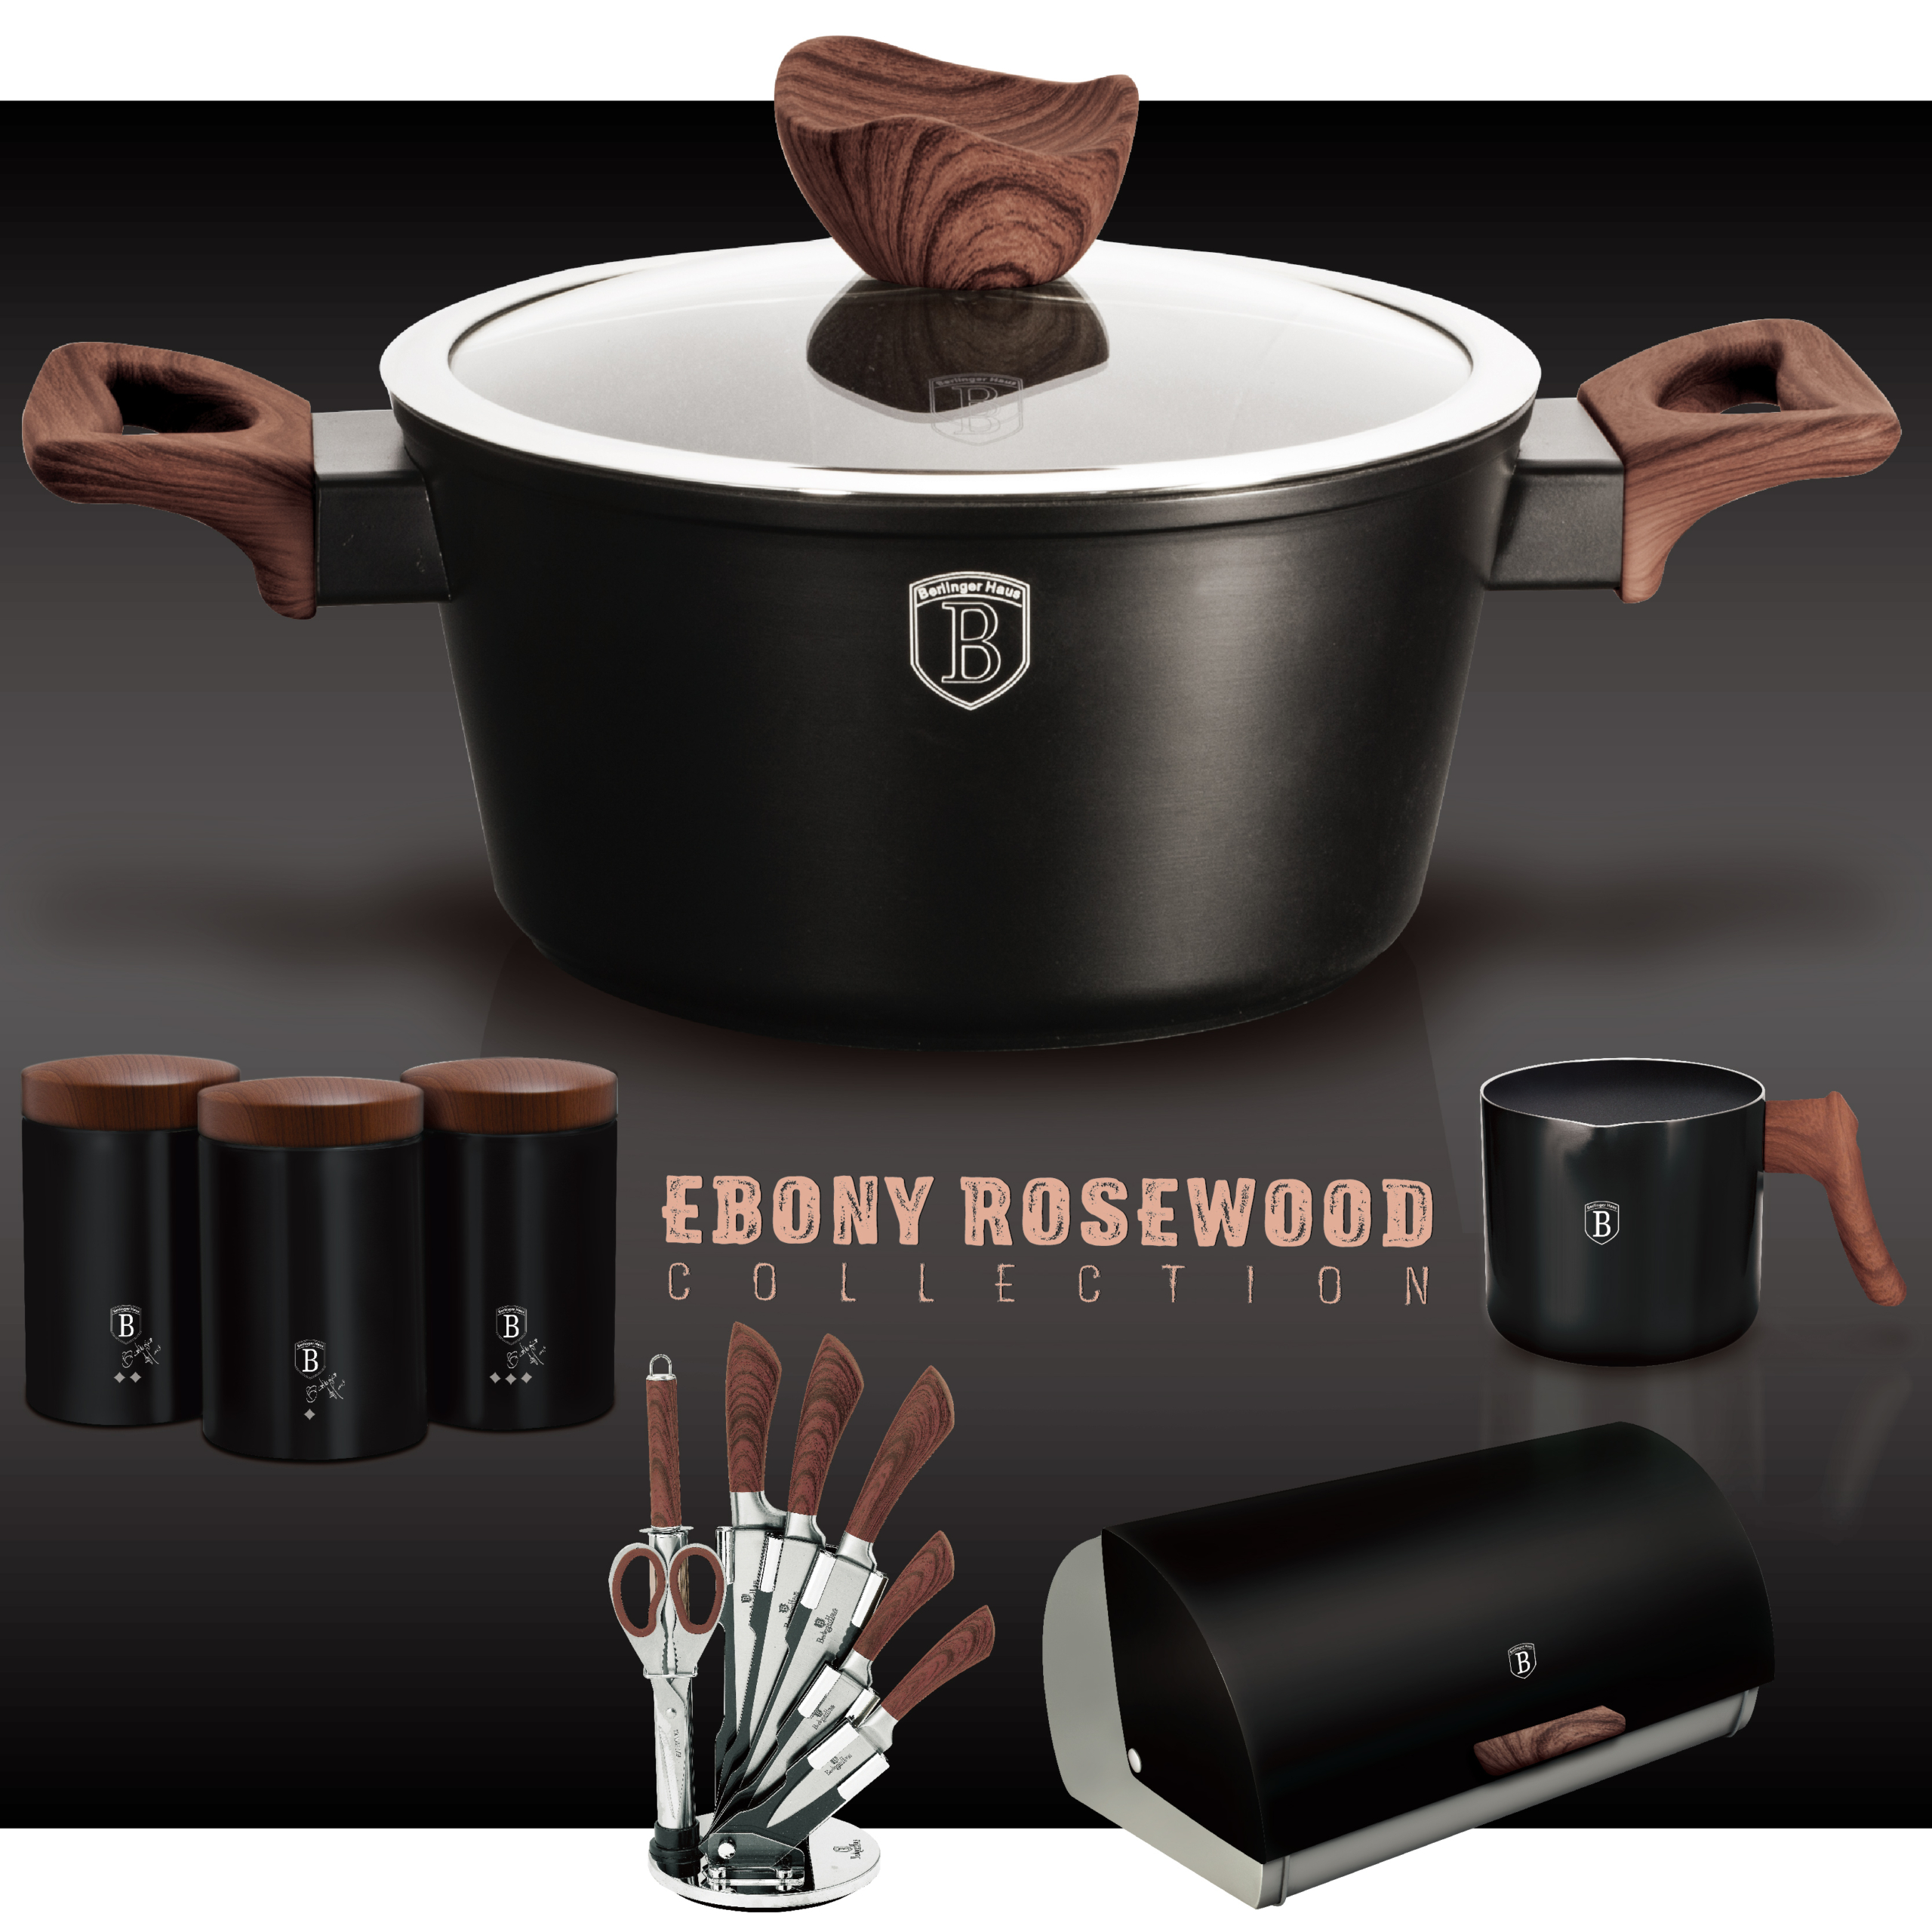 BerlingerHaus Ebony Rosewood Collection termék család oldal a főbb konyhai termékekkel